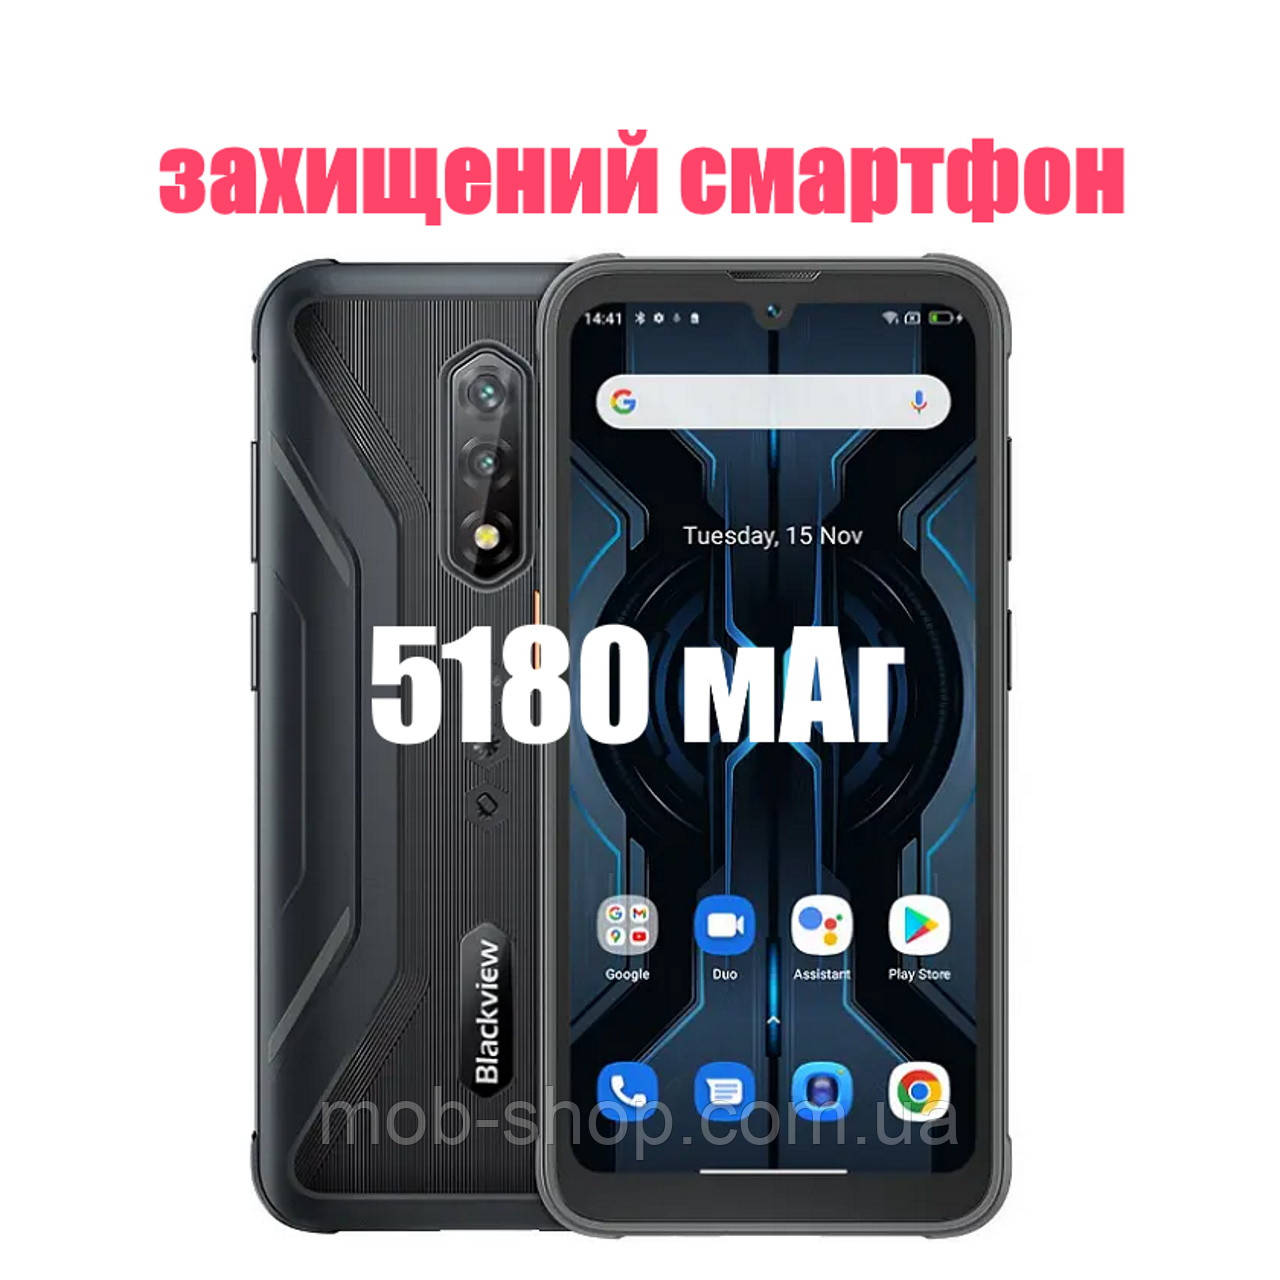 Захищений смартфон Blackview BV5200 Pro 4/64Gb black сенсорний телефон з гарною батареєю